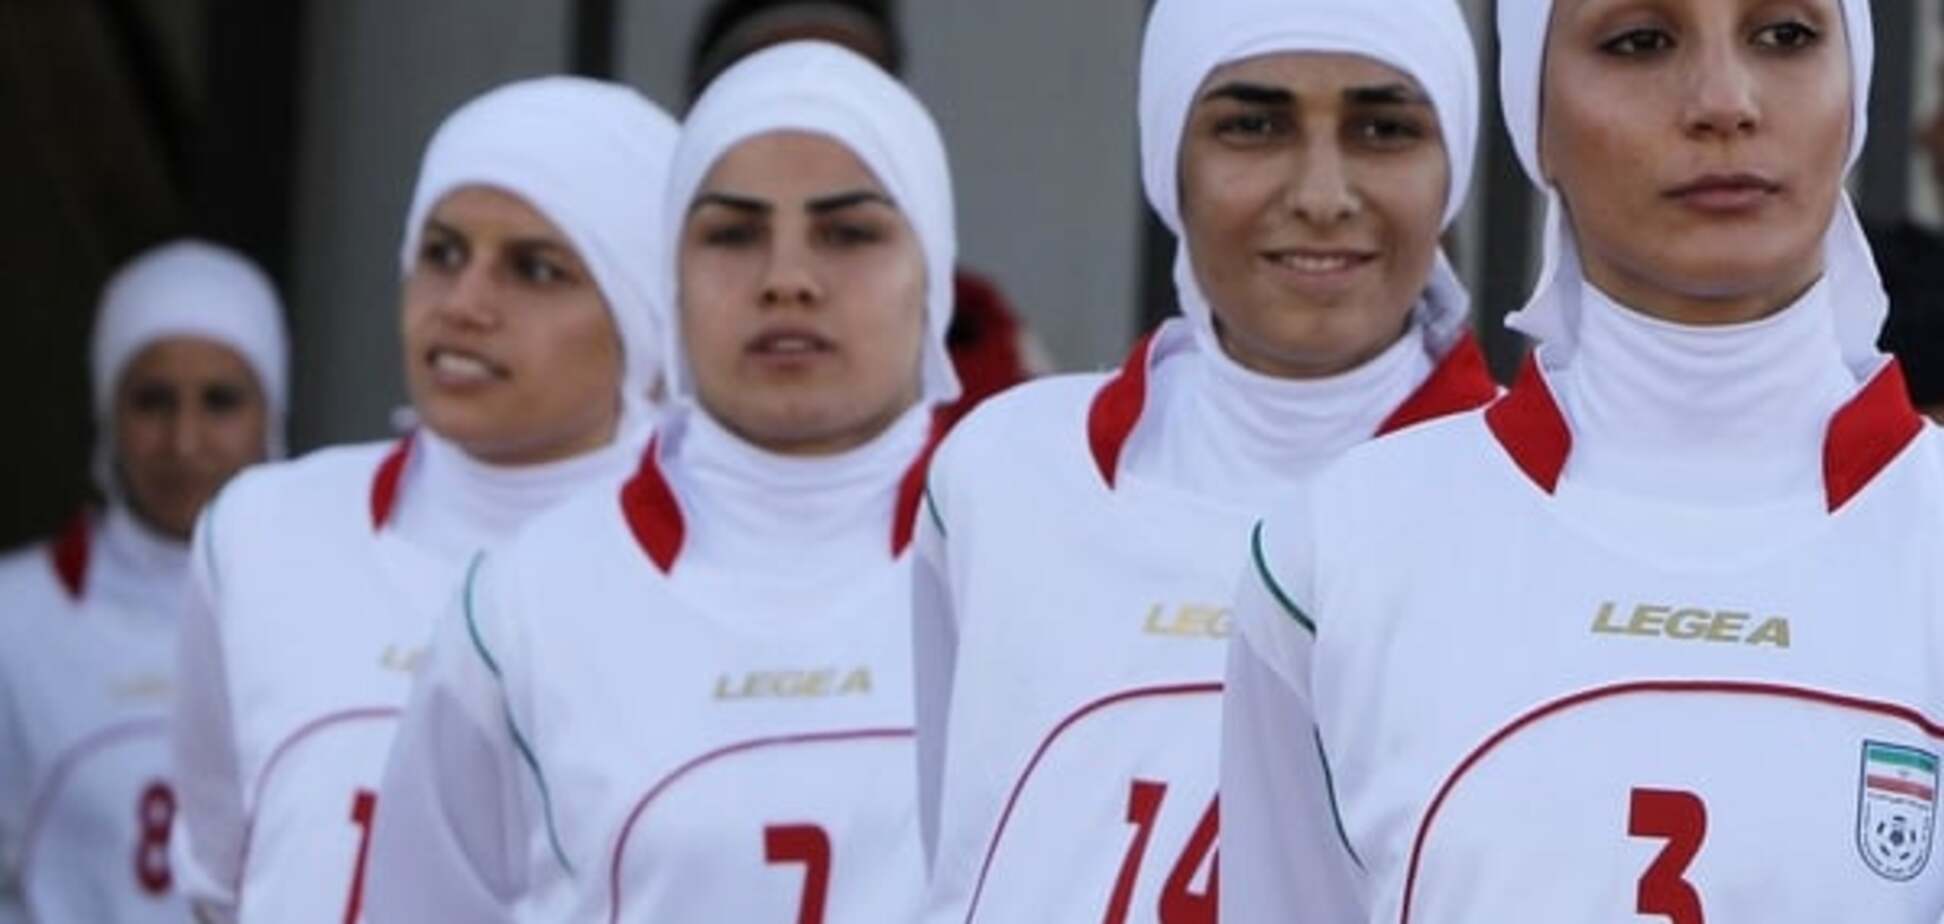 Кошмар болельщика: восемь игроков женской сборной Ирана оказались мужчинами